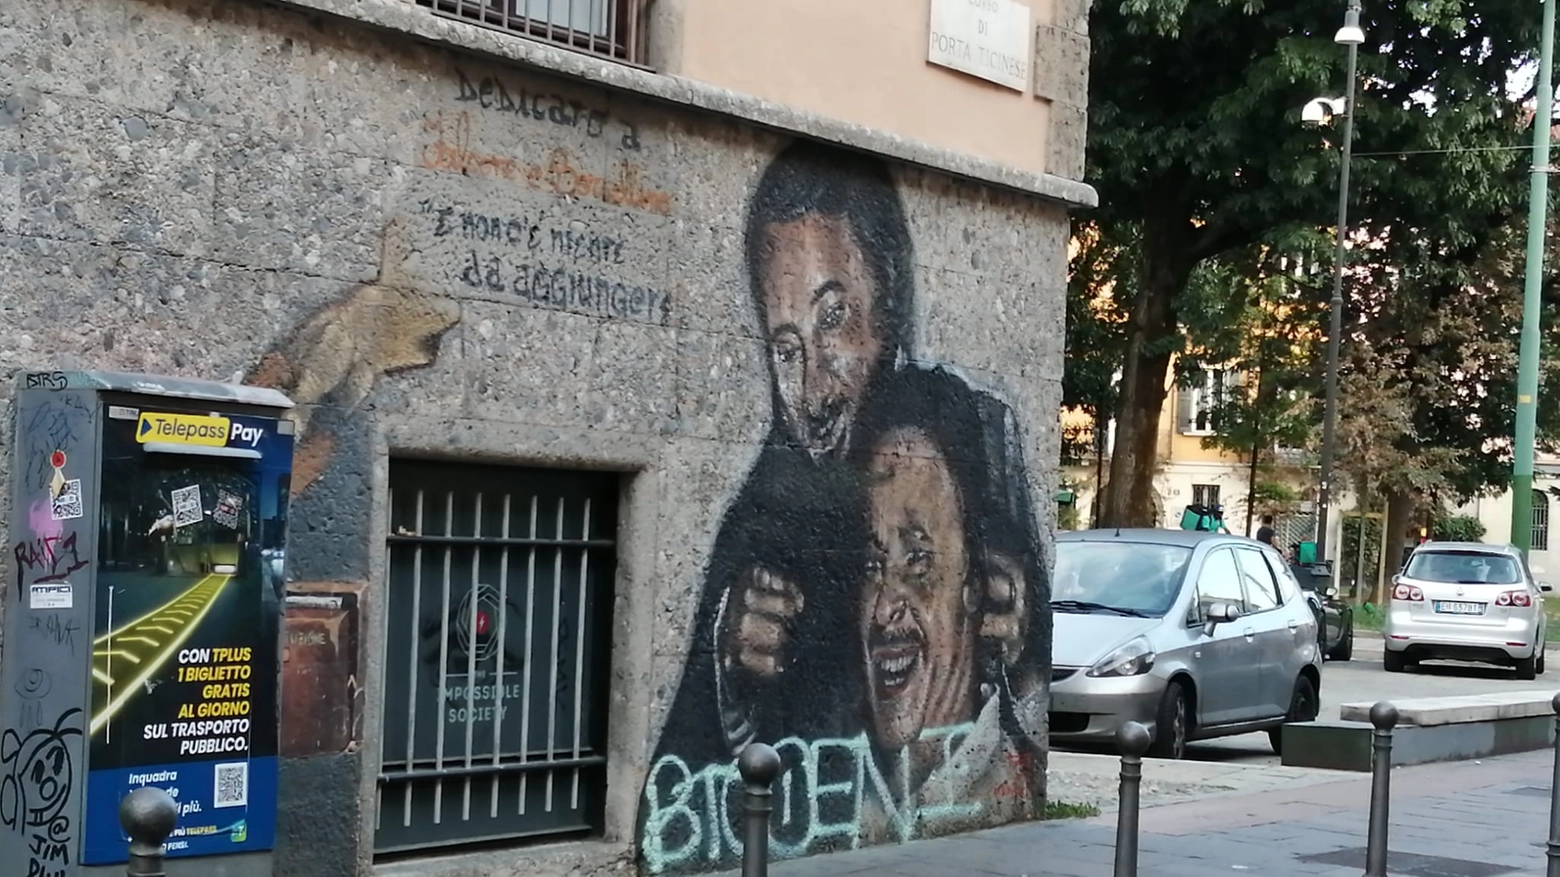  Imbrattato con una scritta il murale di Falcone e Borsellino in corso di Porta Ticinese 